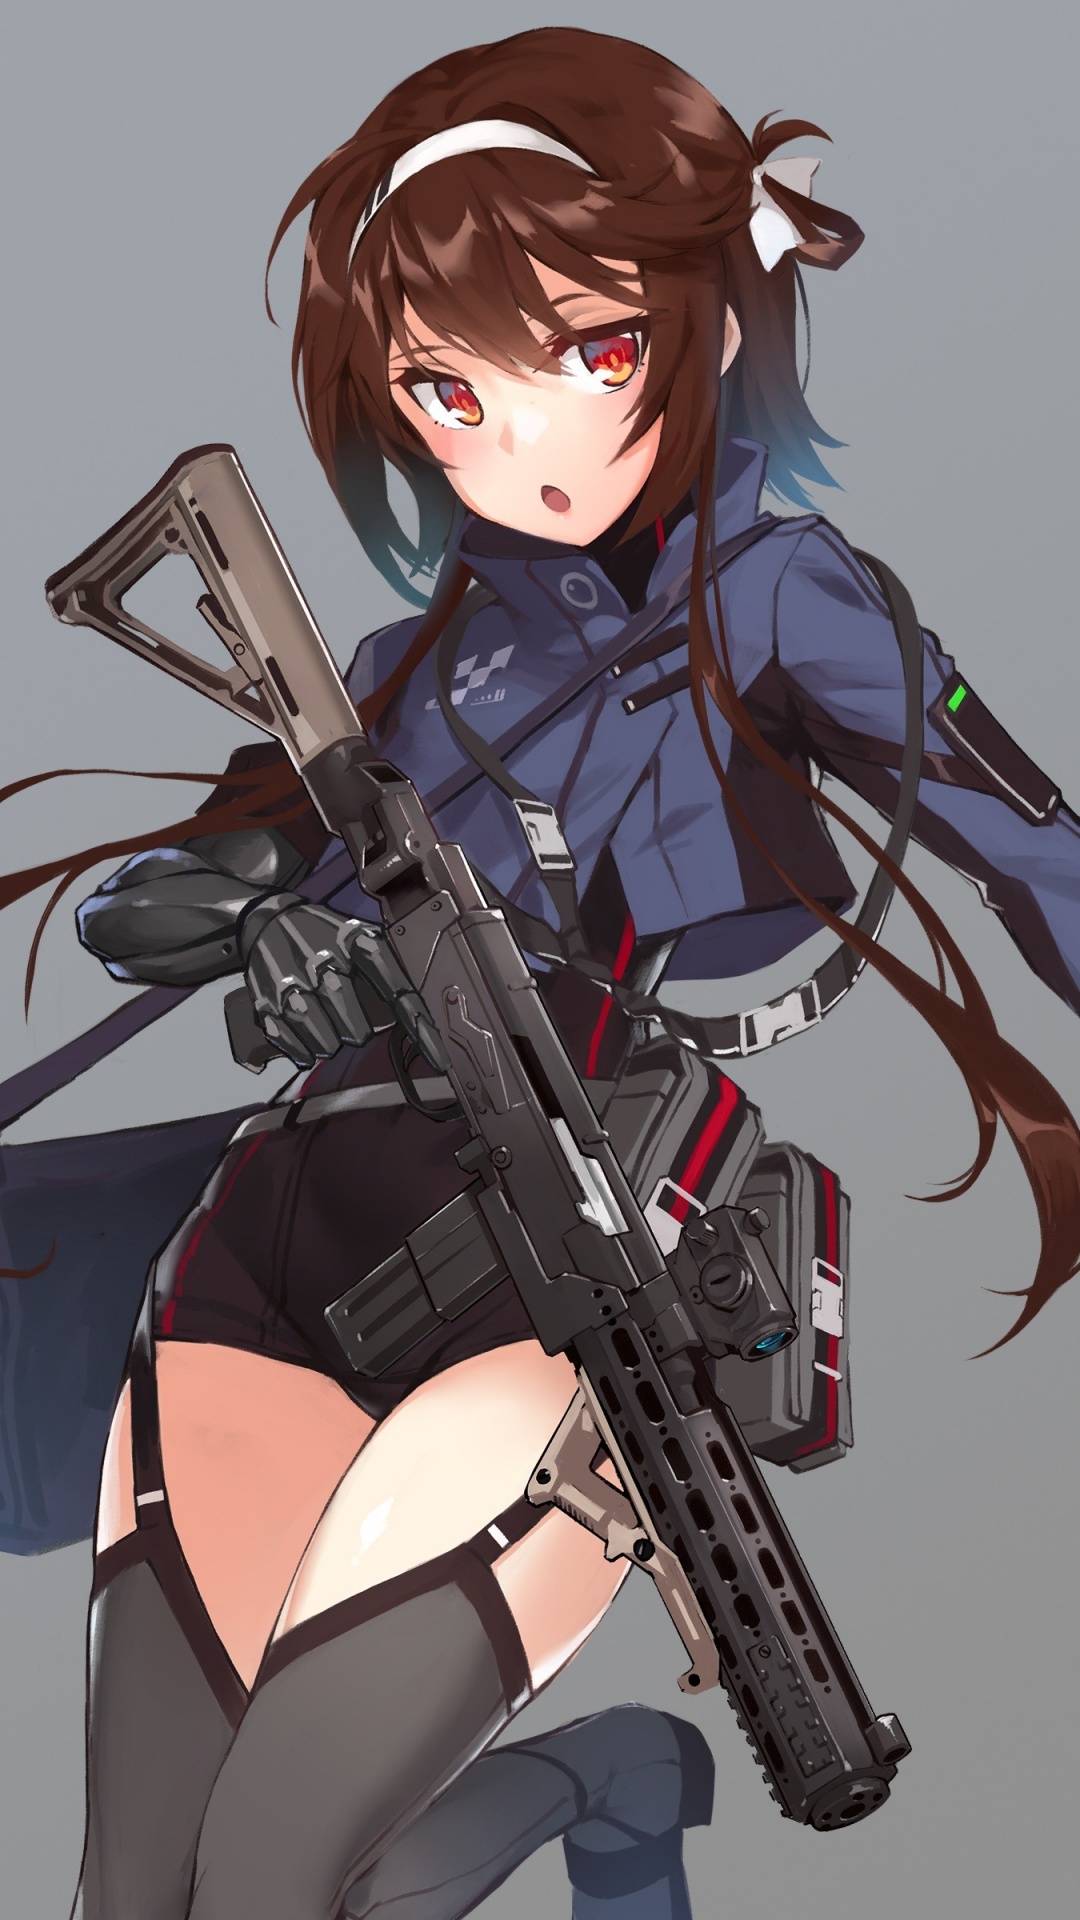 Mujer en Vestido Azul y Negro Con Personaje de Anime de Rifle. Wallpaper in 1080x1920 Resolution